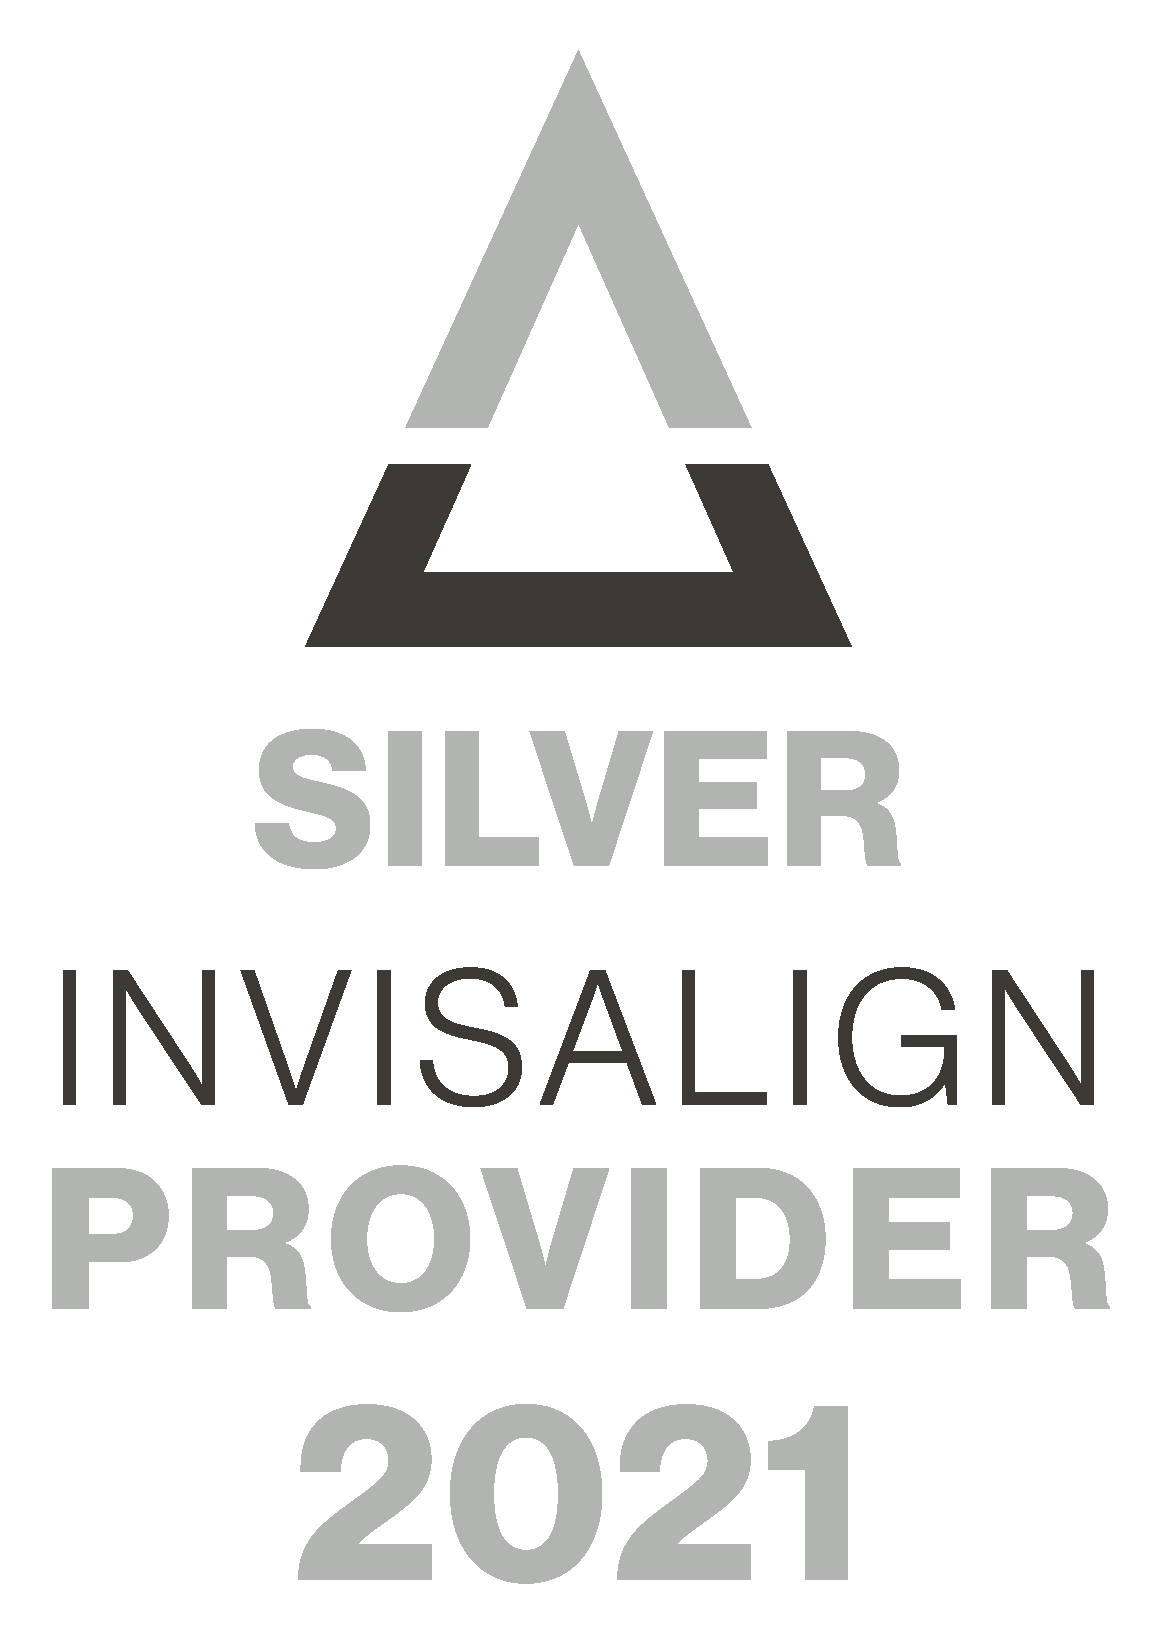 Silver Invisalign Provider